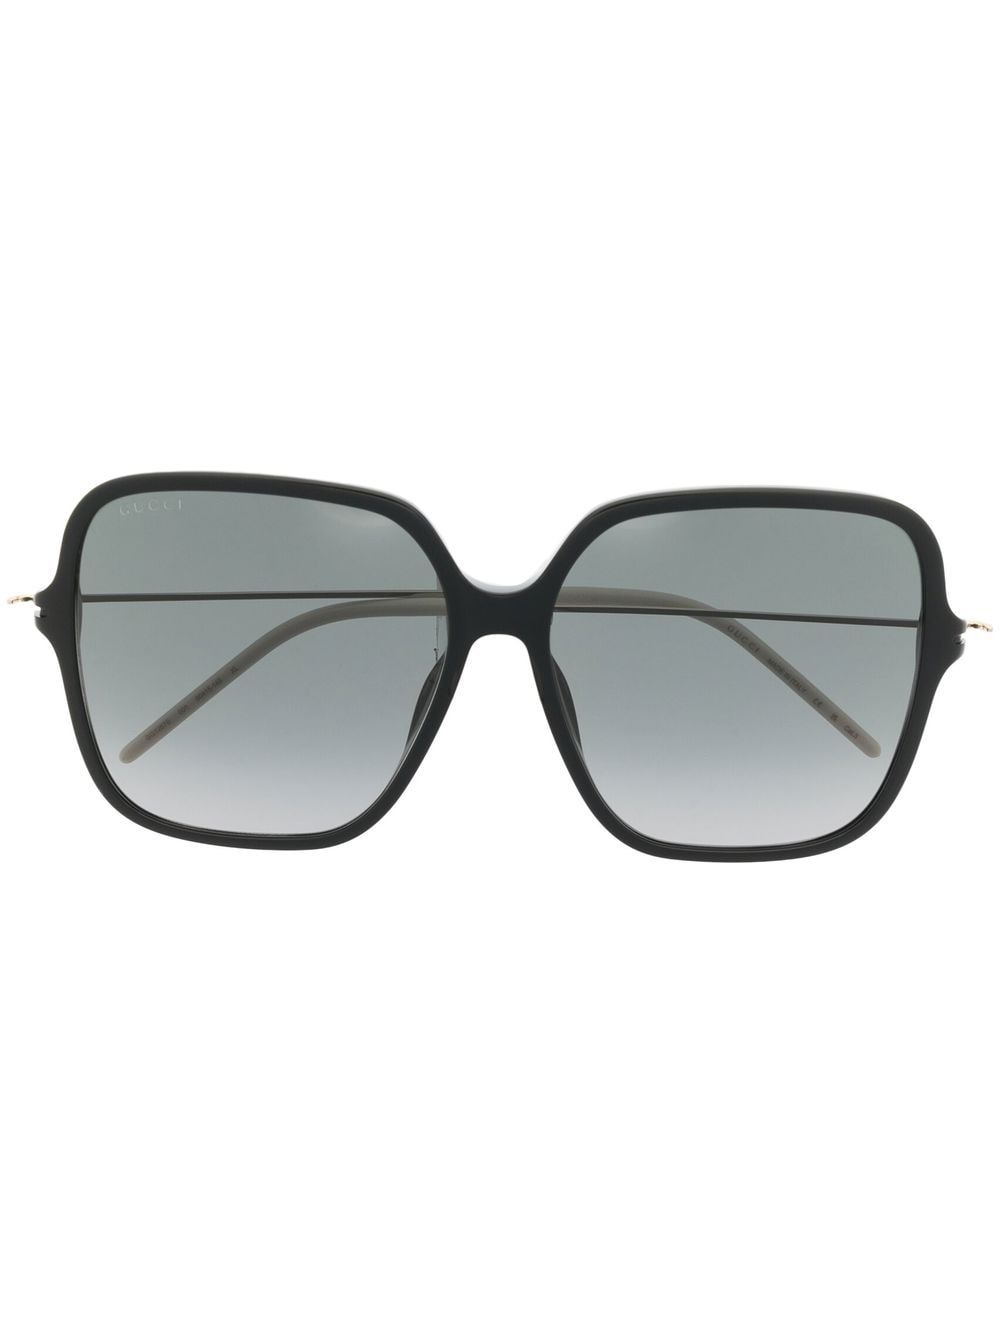 Gucci Eyewear Sonnenbrille mit eckigem Gestell - Schwarz von Gucci Eyewear